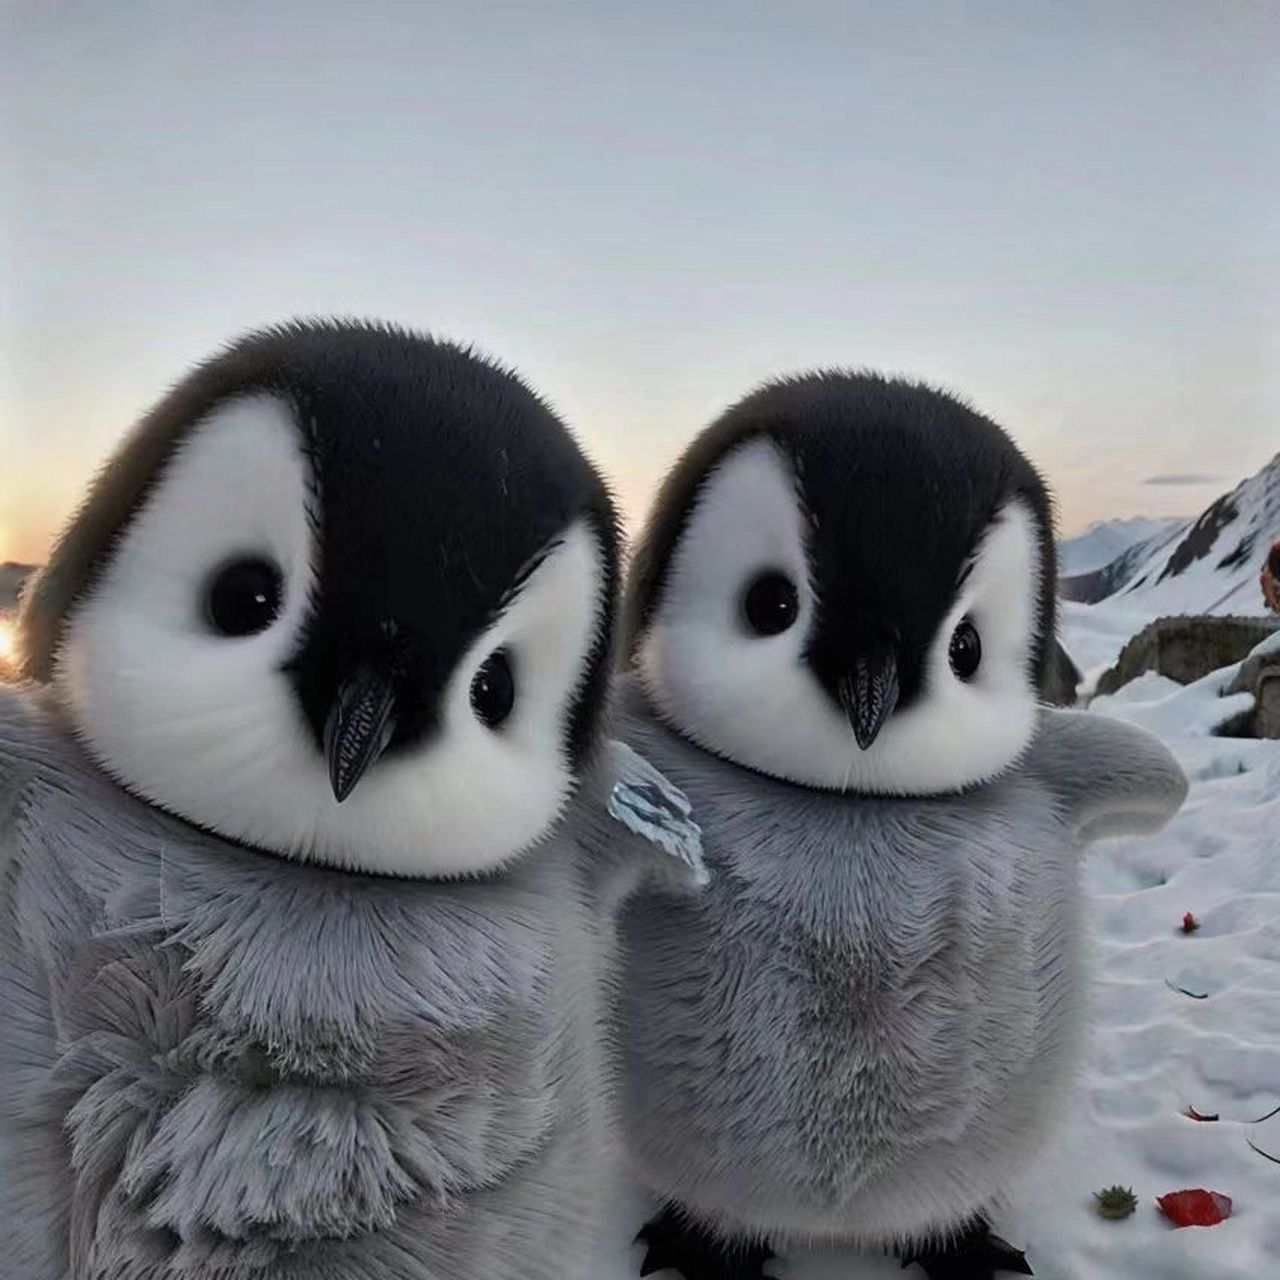 企鹅宝宝有多可爱?